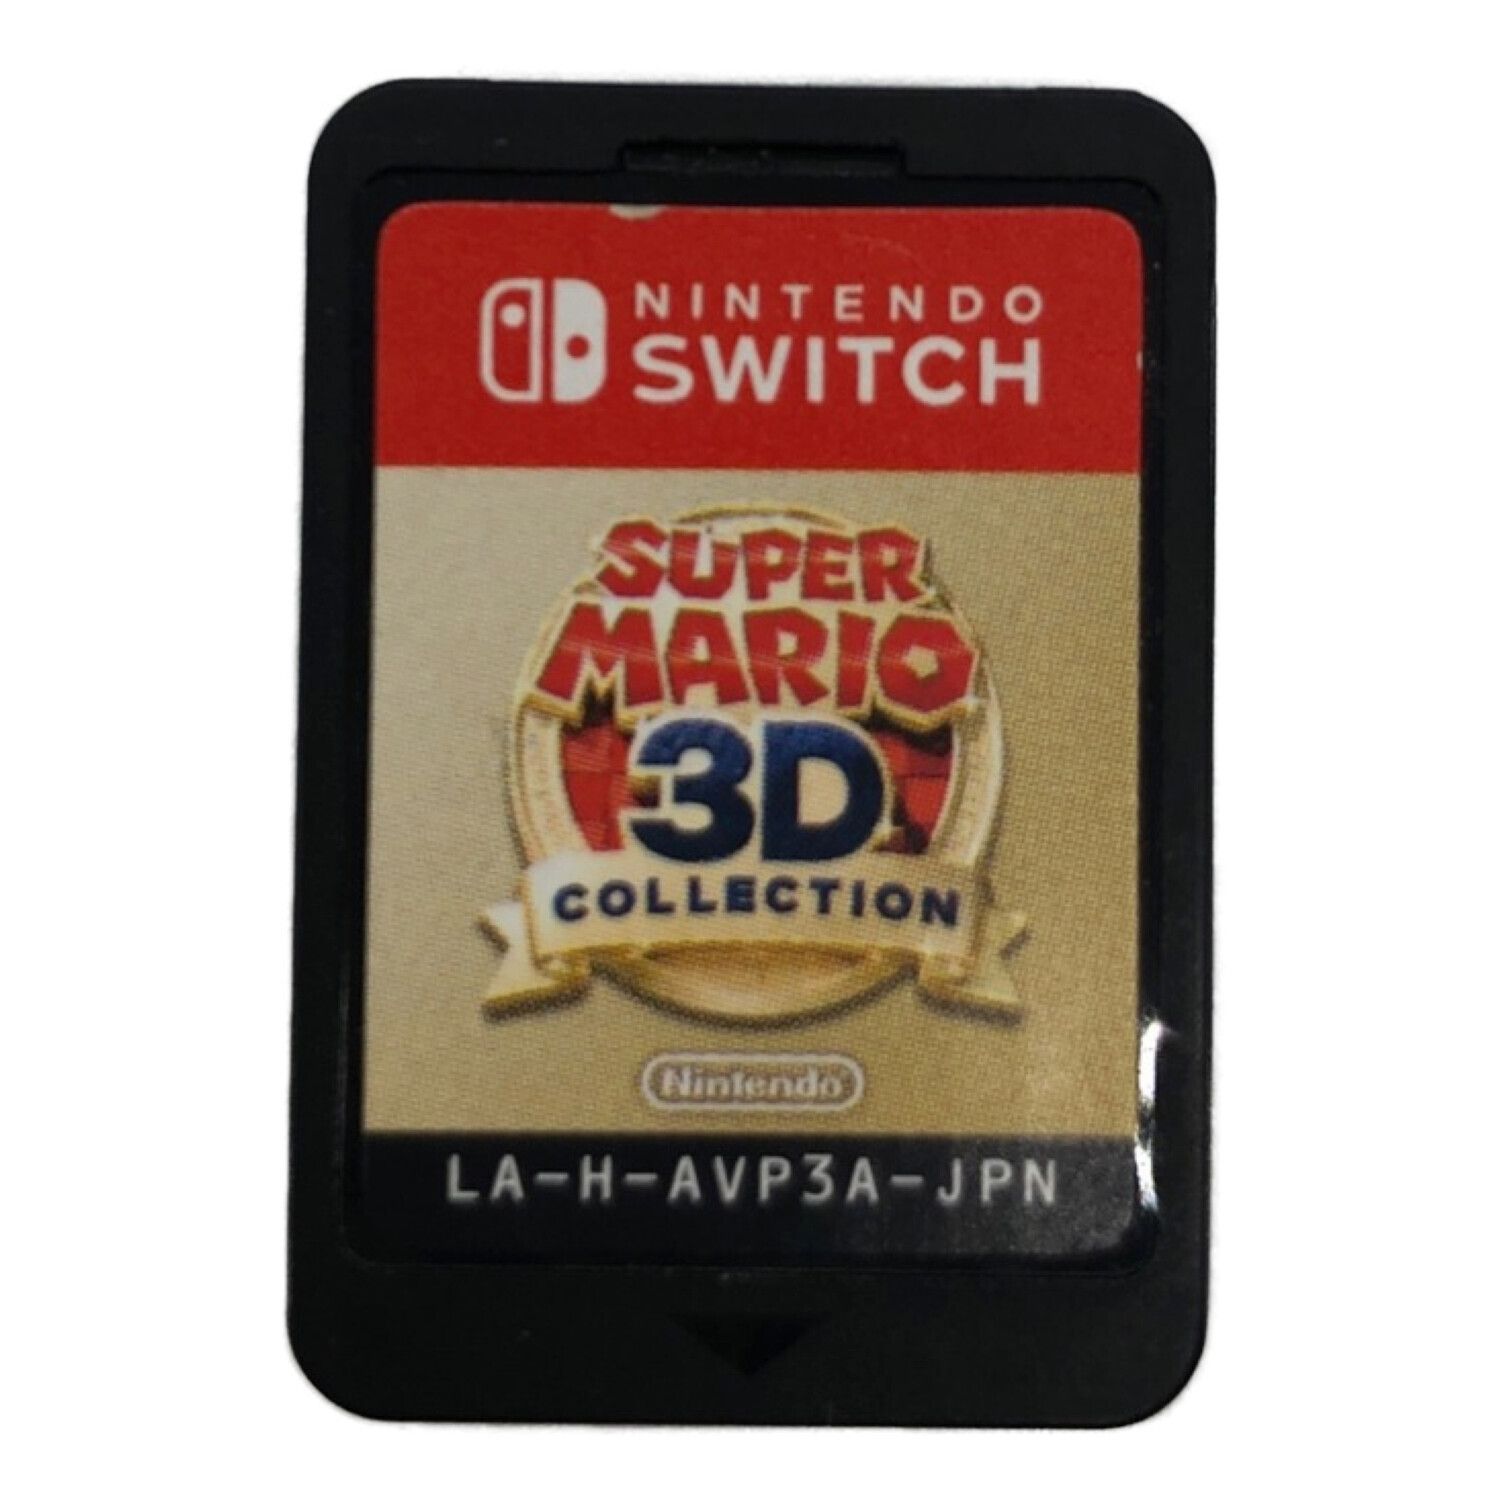 Nintendo Switch用ソフト スーパーマリオ 3Dコレクション CERO A (全 